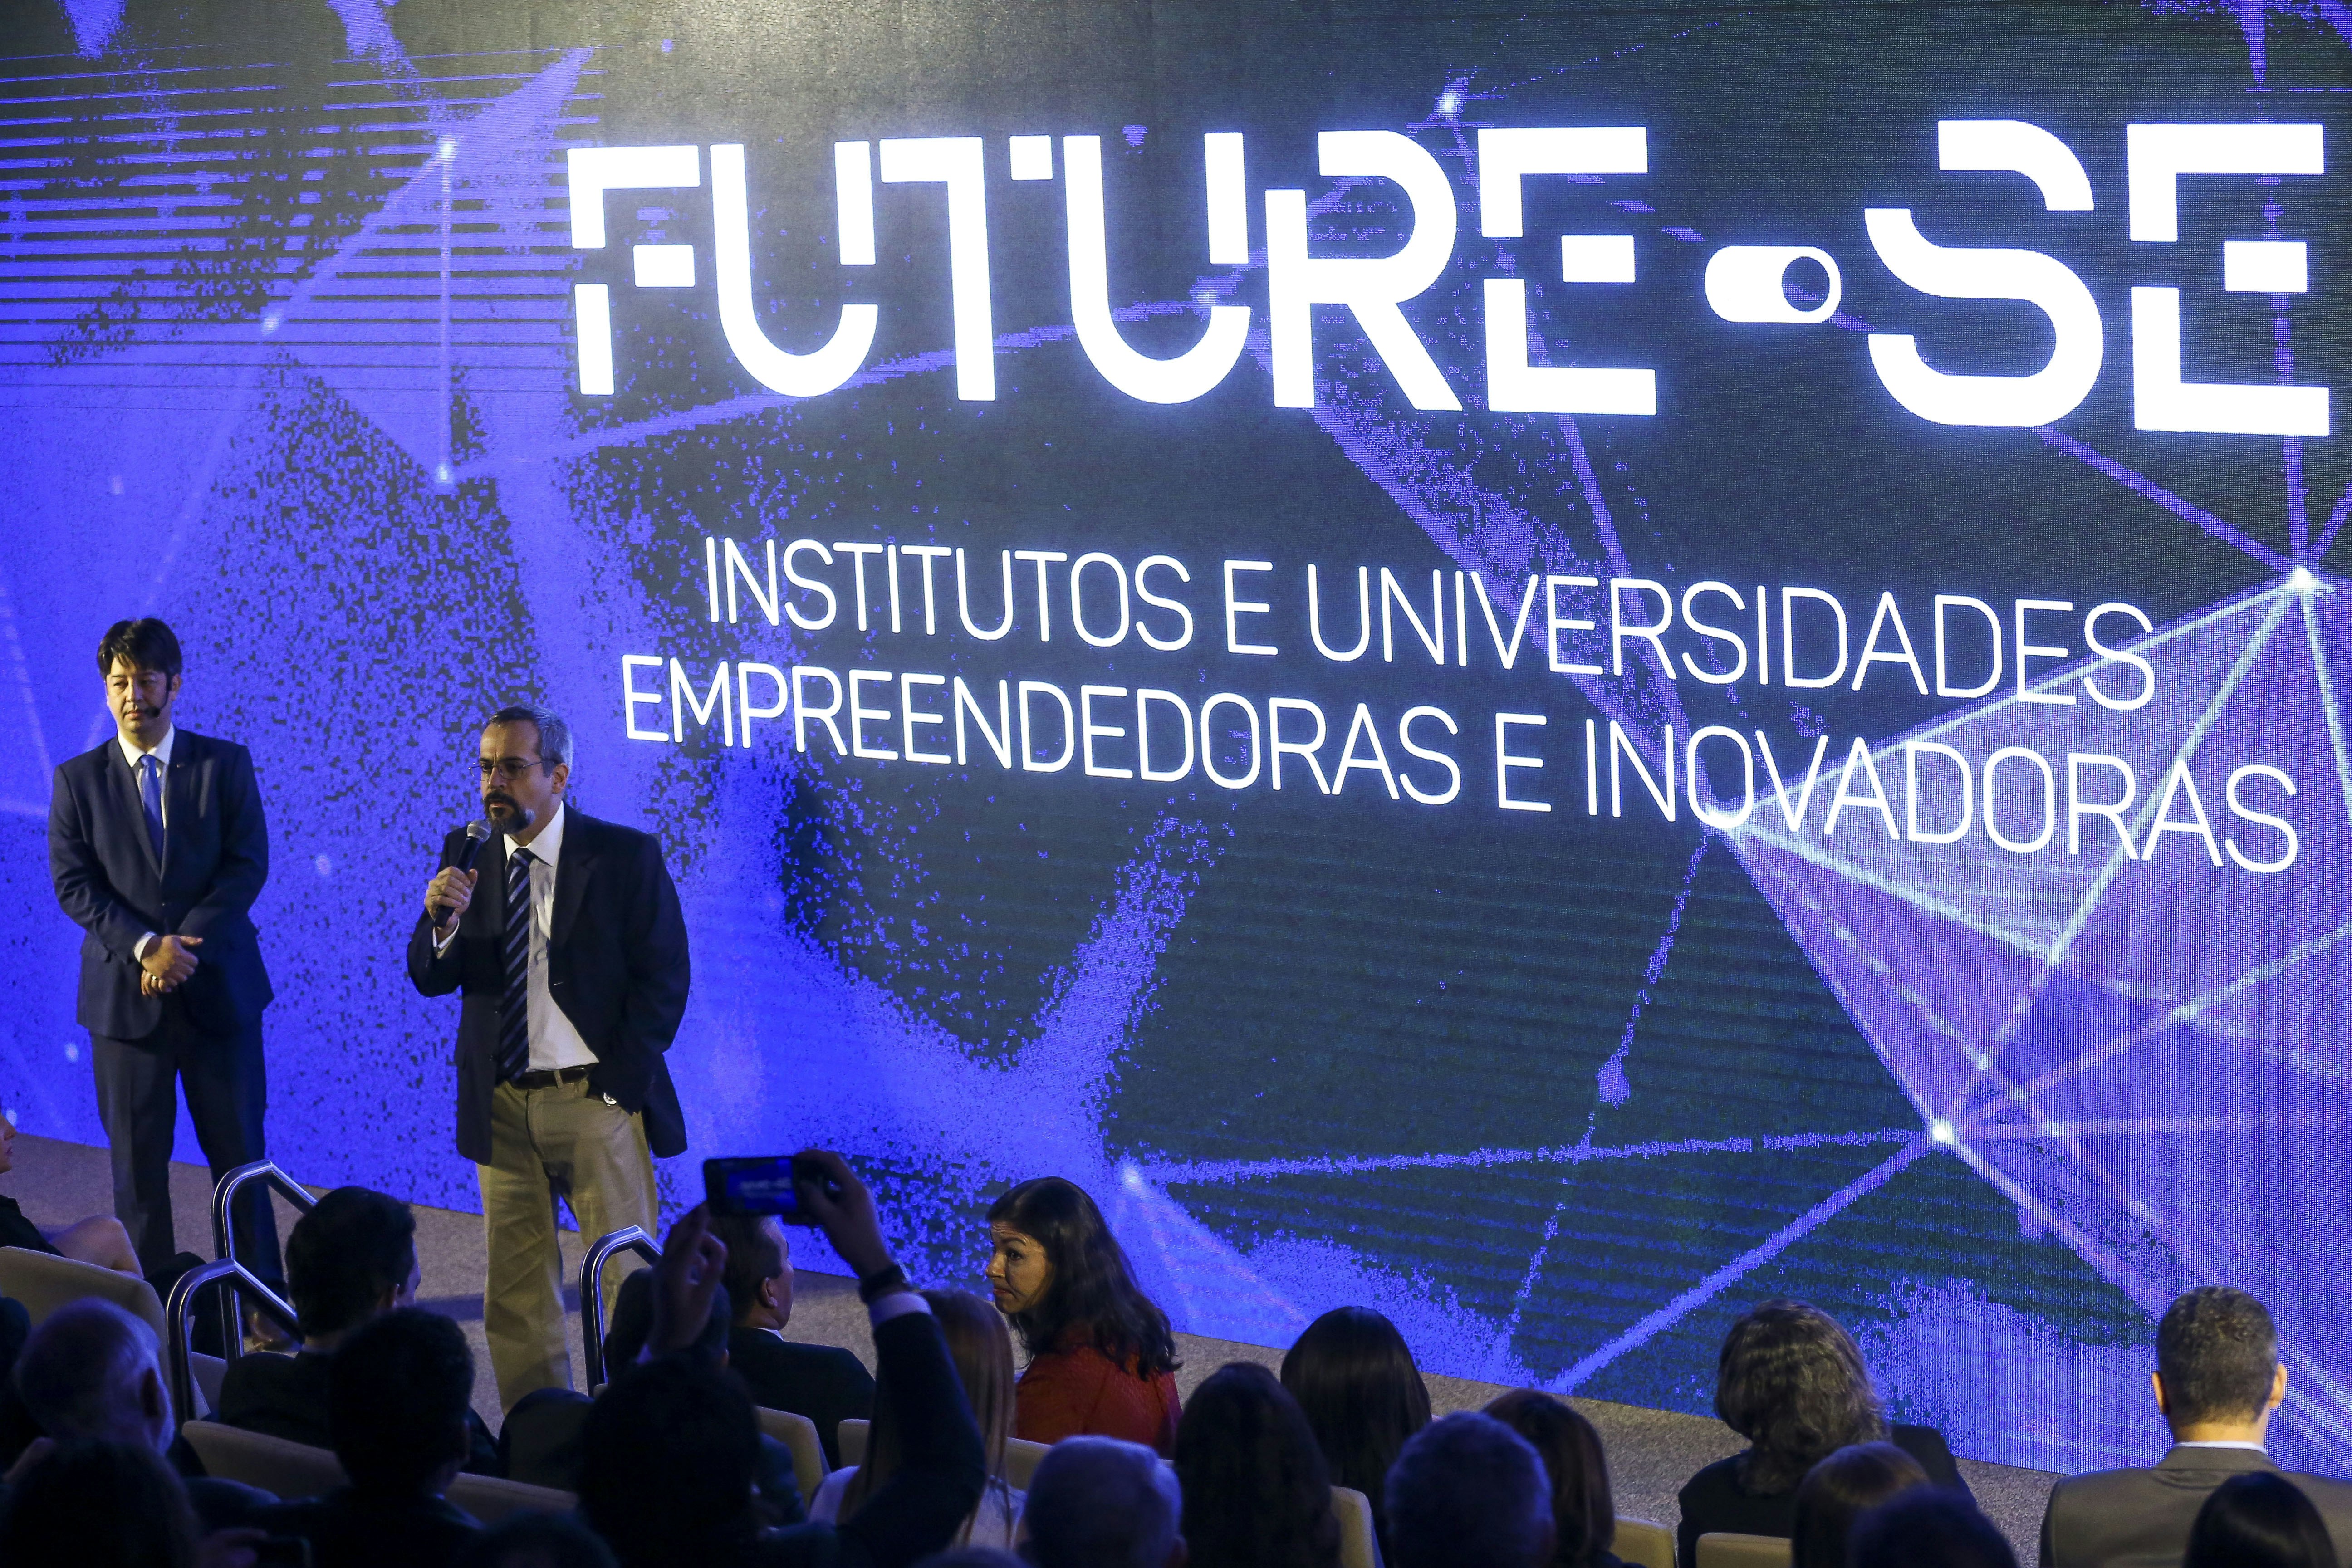 O ministro da Educação, Abraham Weintraub, e o secretário de Educação Superior do MEC, Arnaldo Lima, apresentam o programa "Future-se".